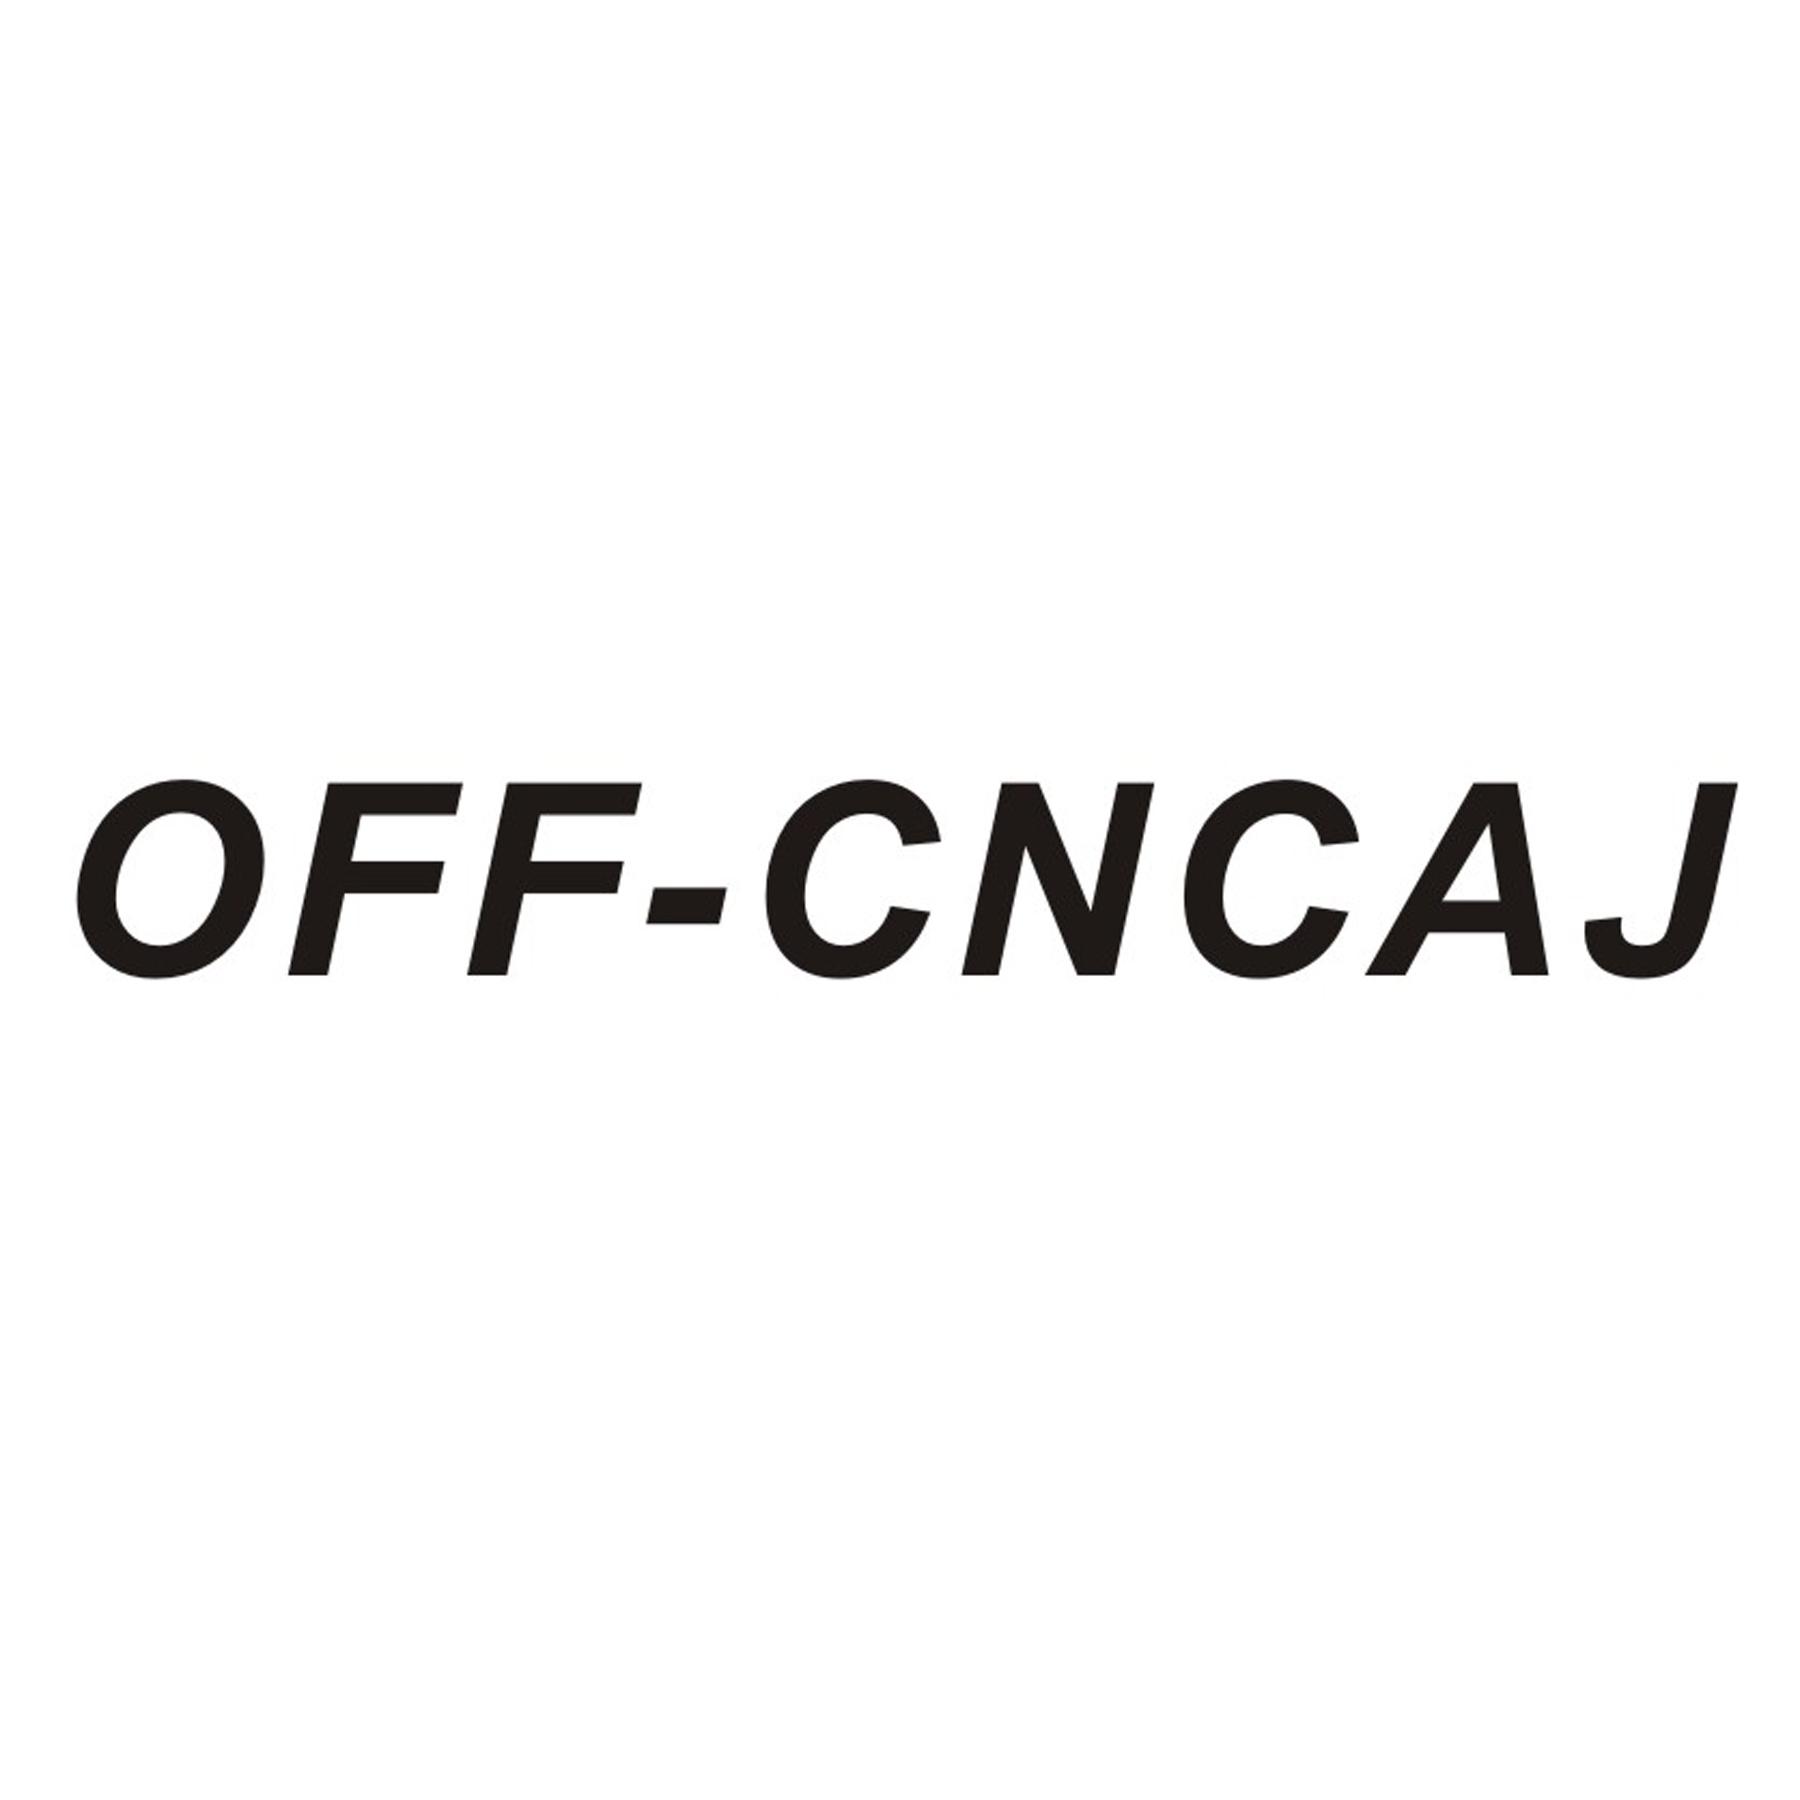 OFF-CNCAJ